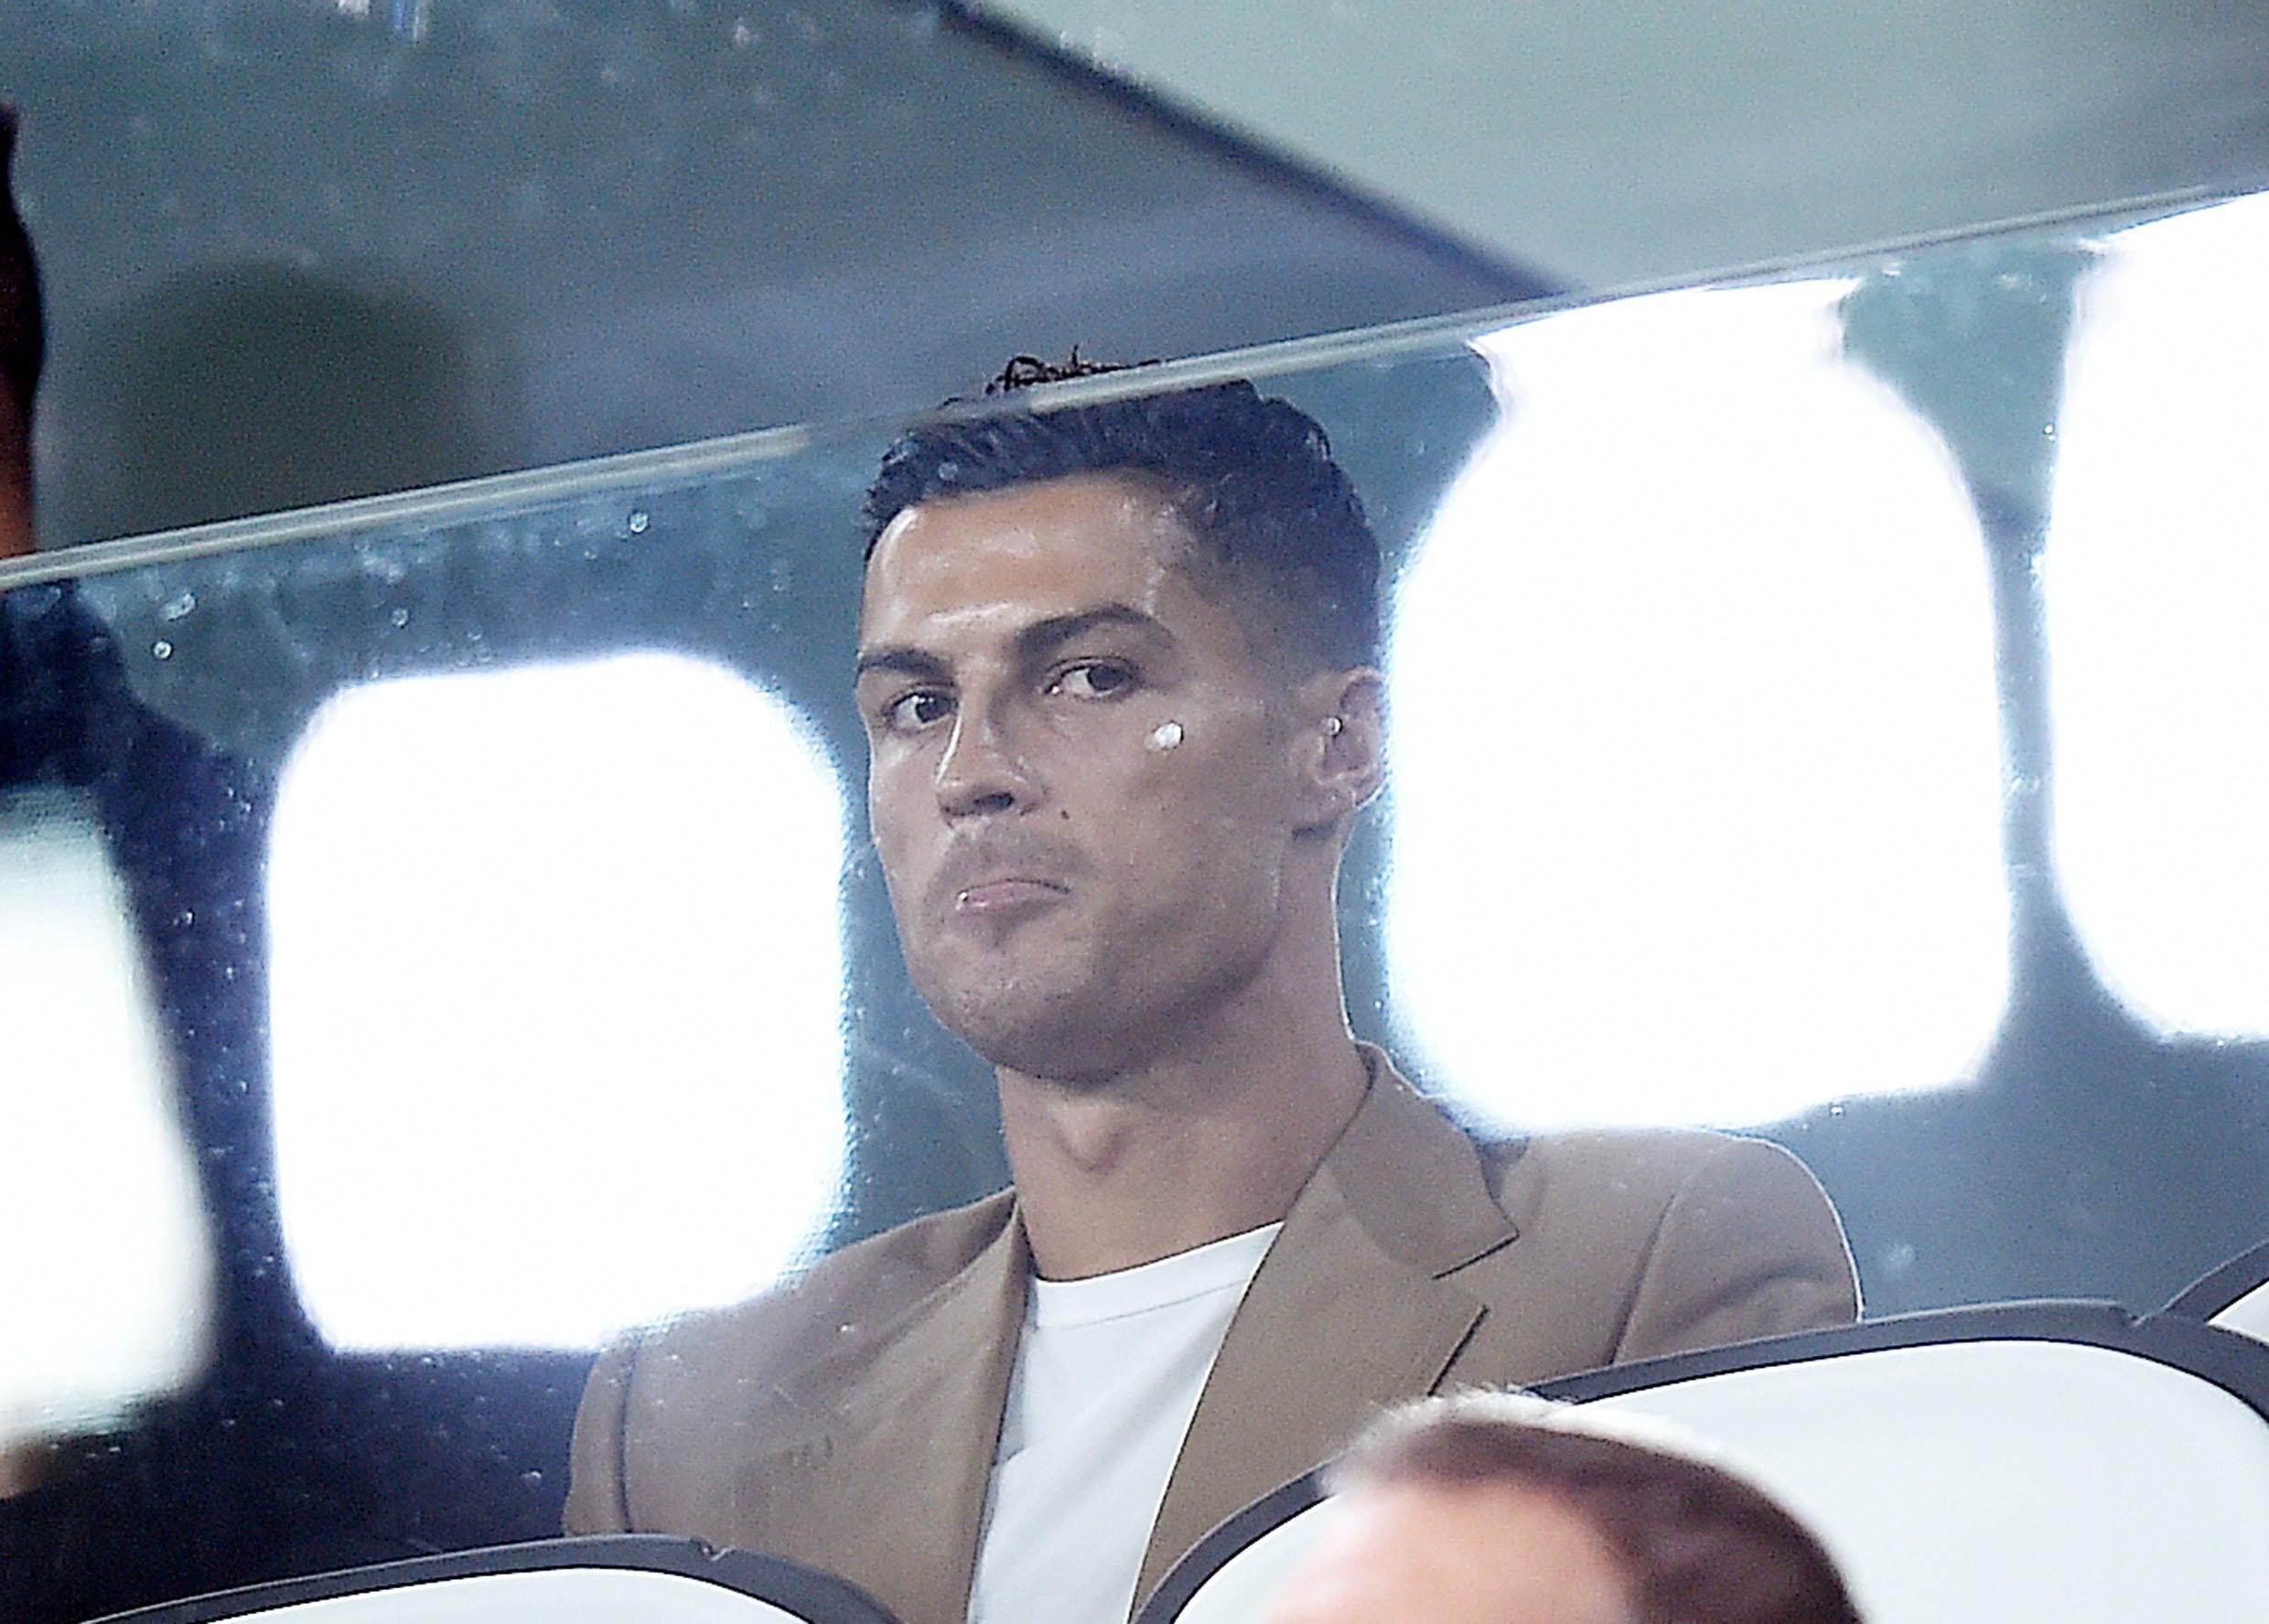 ¿La acusación de violación dejará a Ronaldo sin patrocinadores?